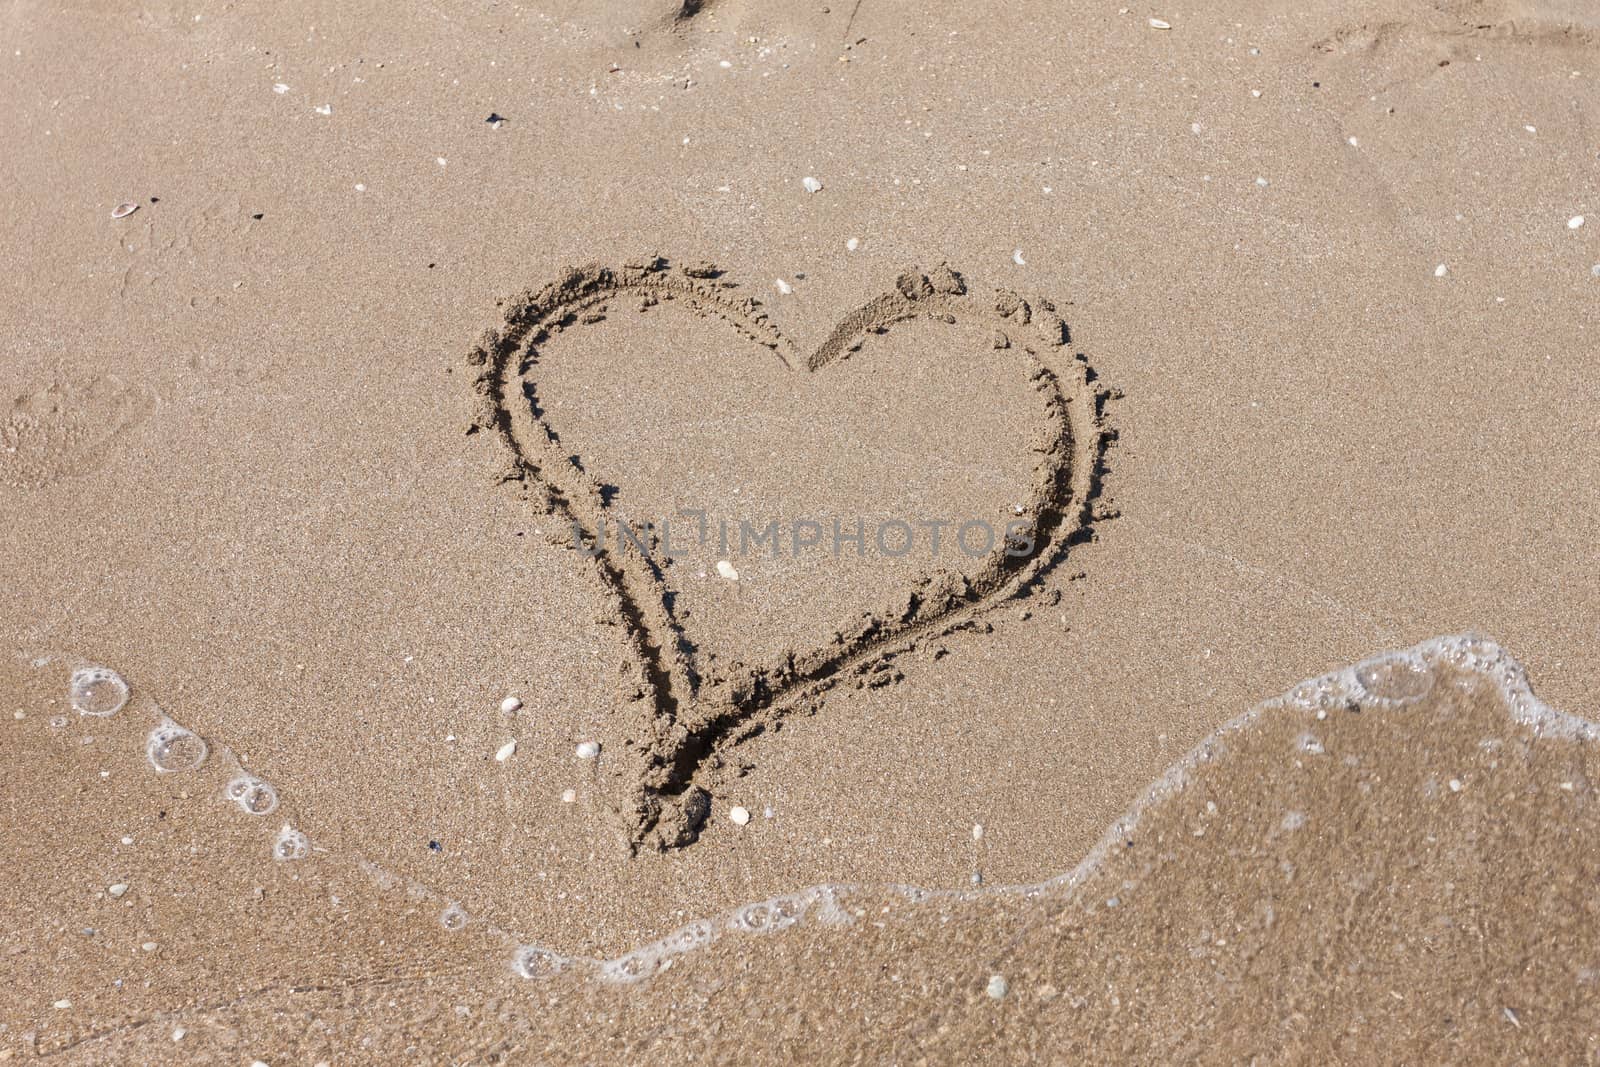 Heart on the sandy beach. Romantic composition.